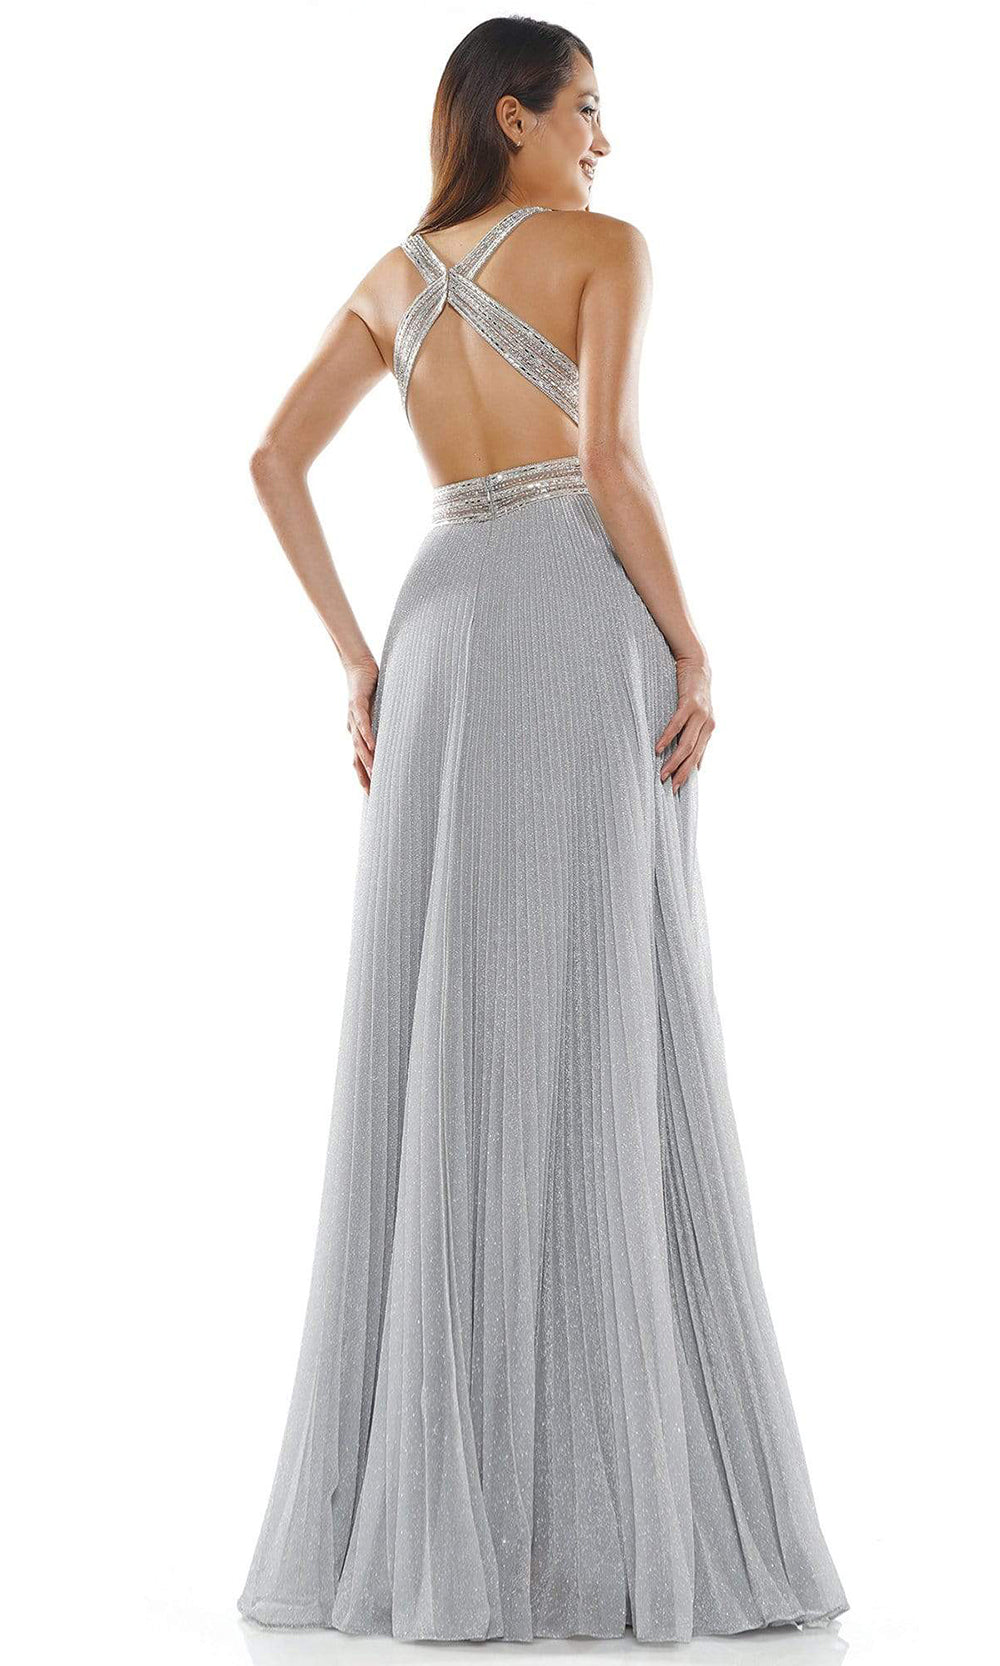 Glow Dress - Metallic Crisscross Ornate Long Gown G941SC In Silver